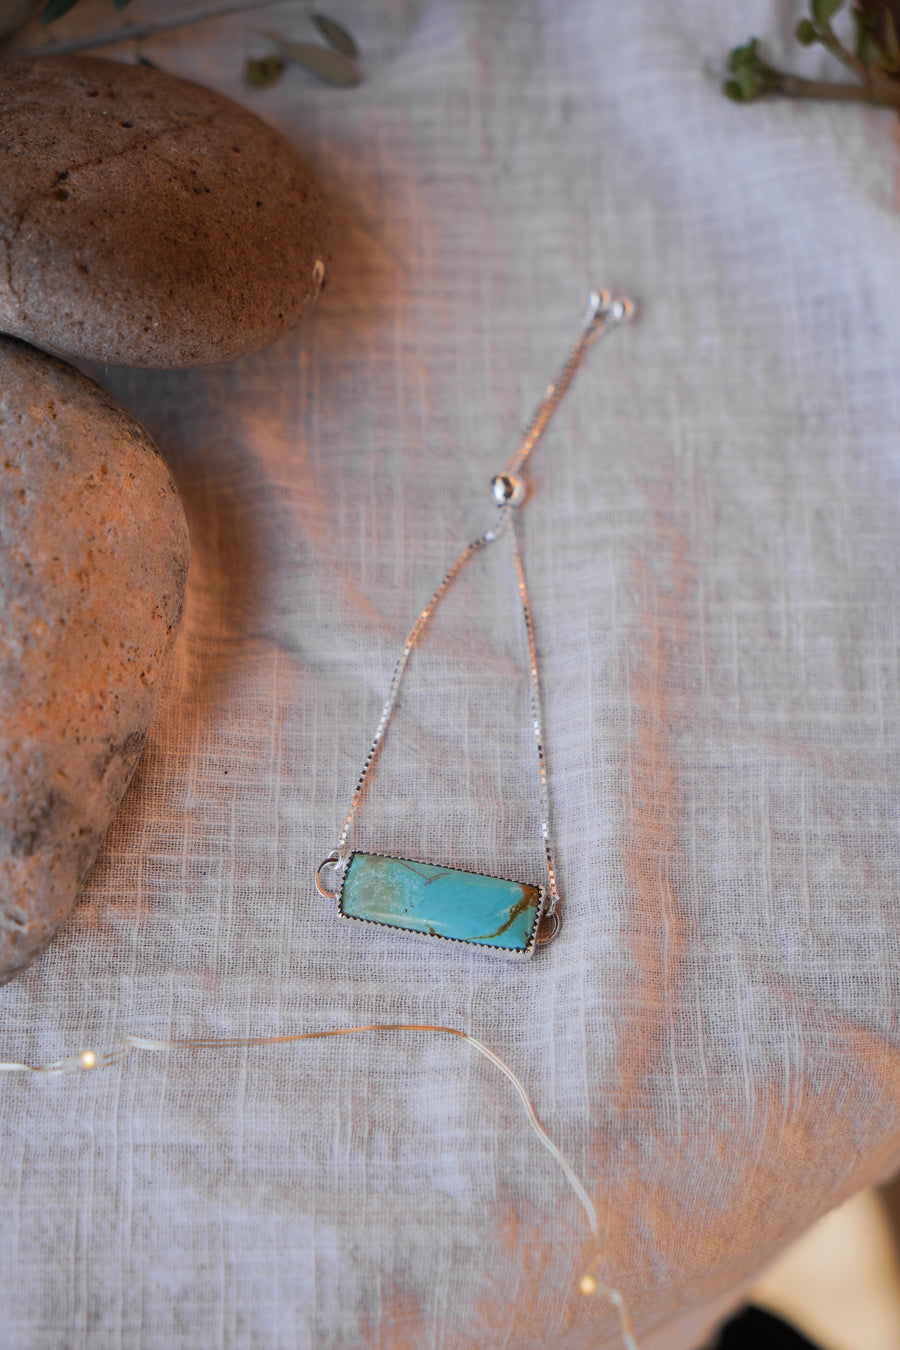 Out West Adjustable Bracelet in Kingman Turquoise (Sm/Med)